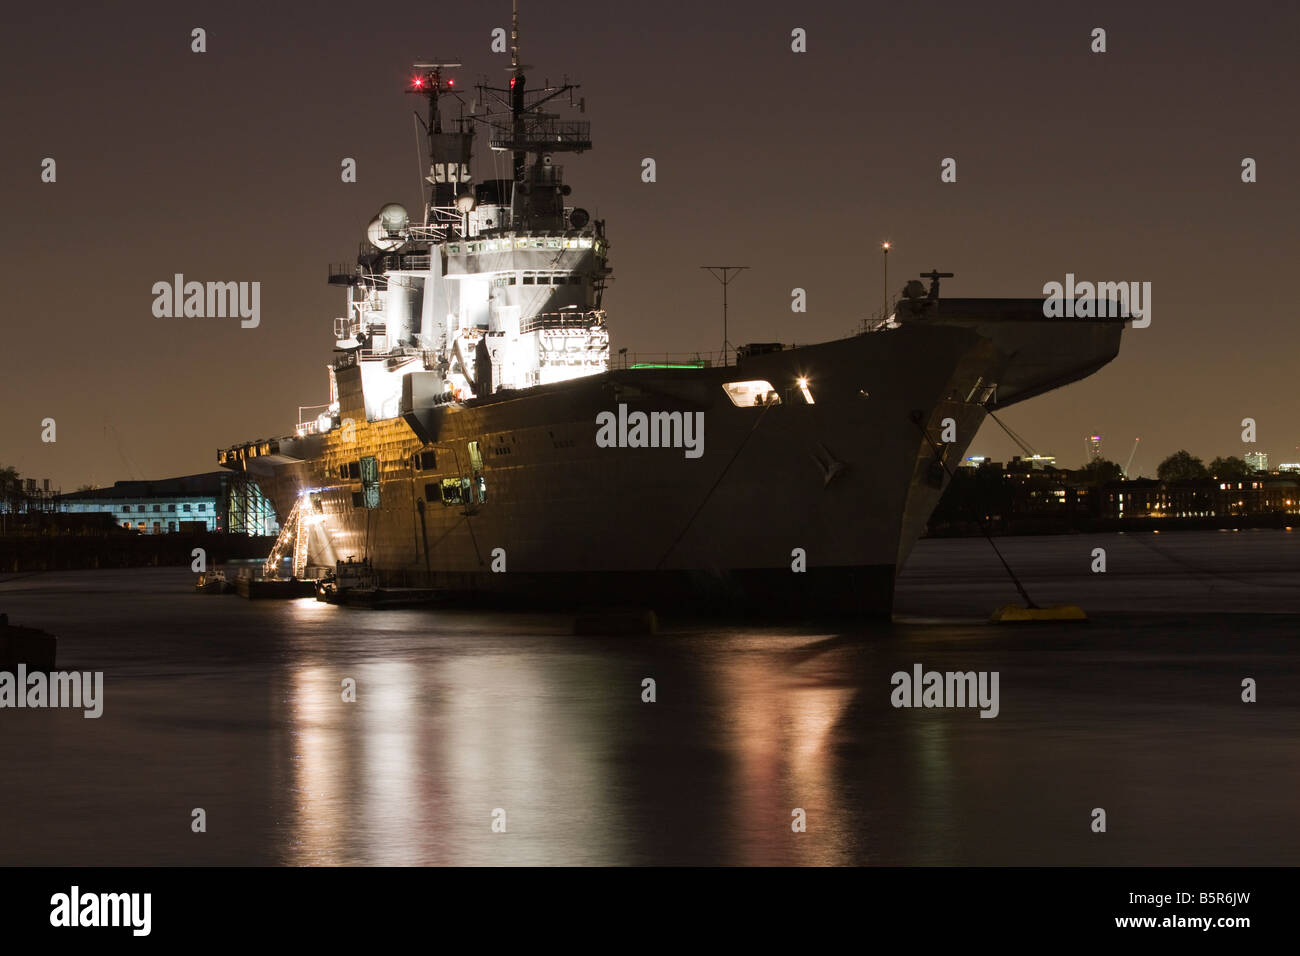 HMS Illustrious vertäut am Greenwich Pier London für Erinnerung Wochenende feiern Stockfoto